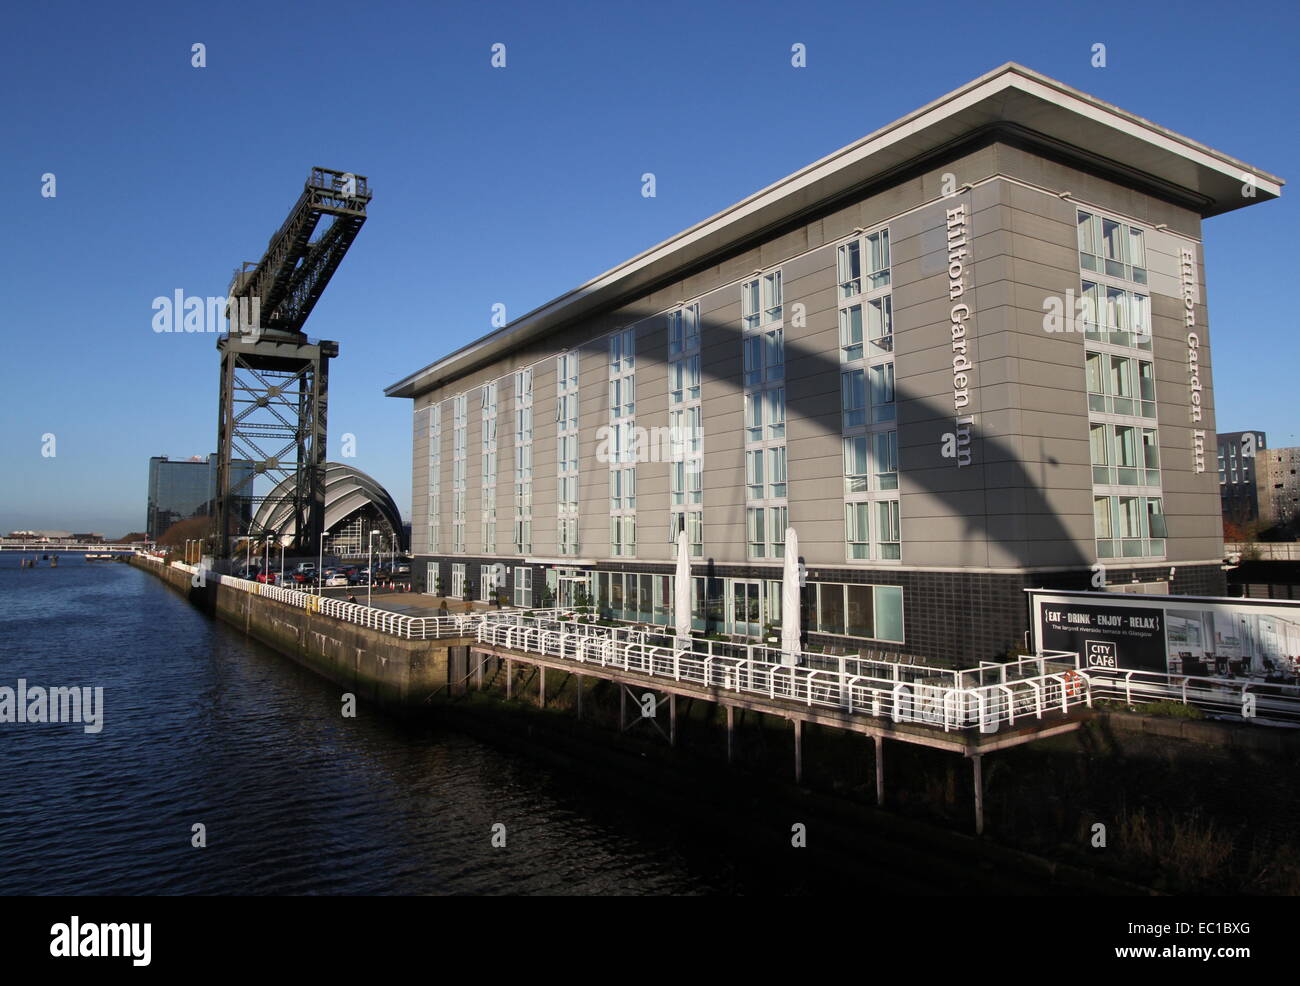 Hilton Garden Inn und Finnieston Kran Glasgow Schottland Dezember 2014 Stockfoto